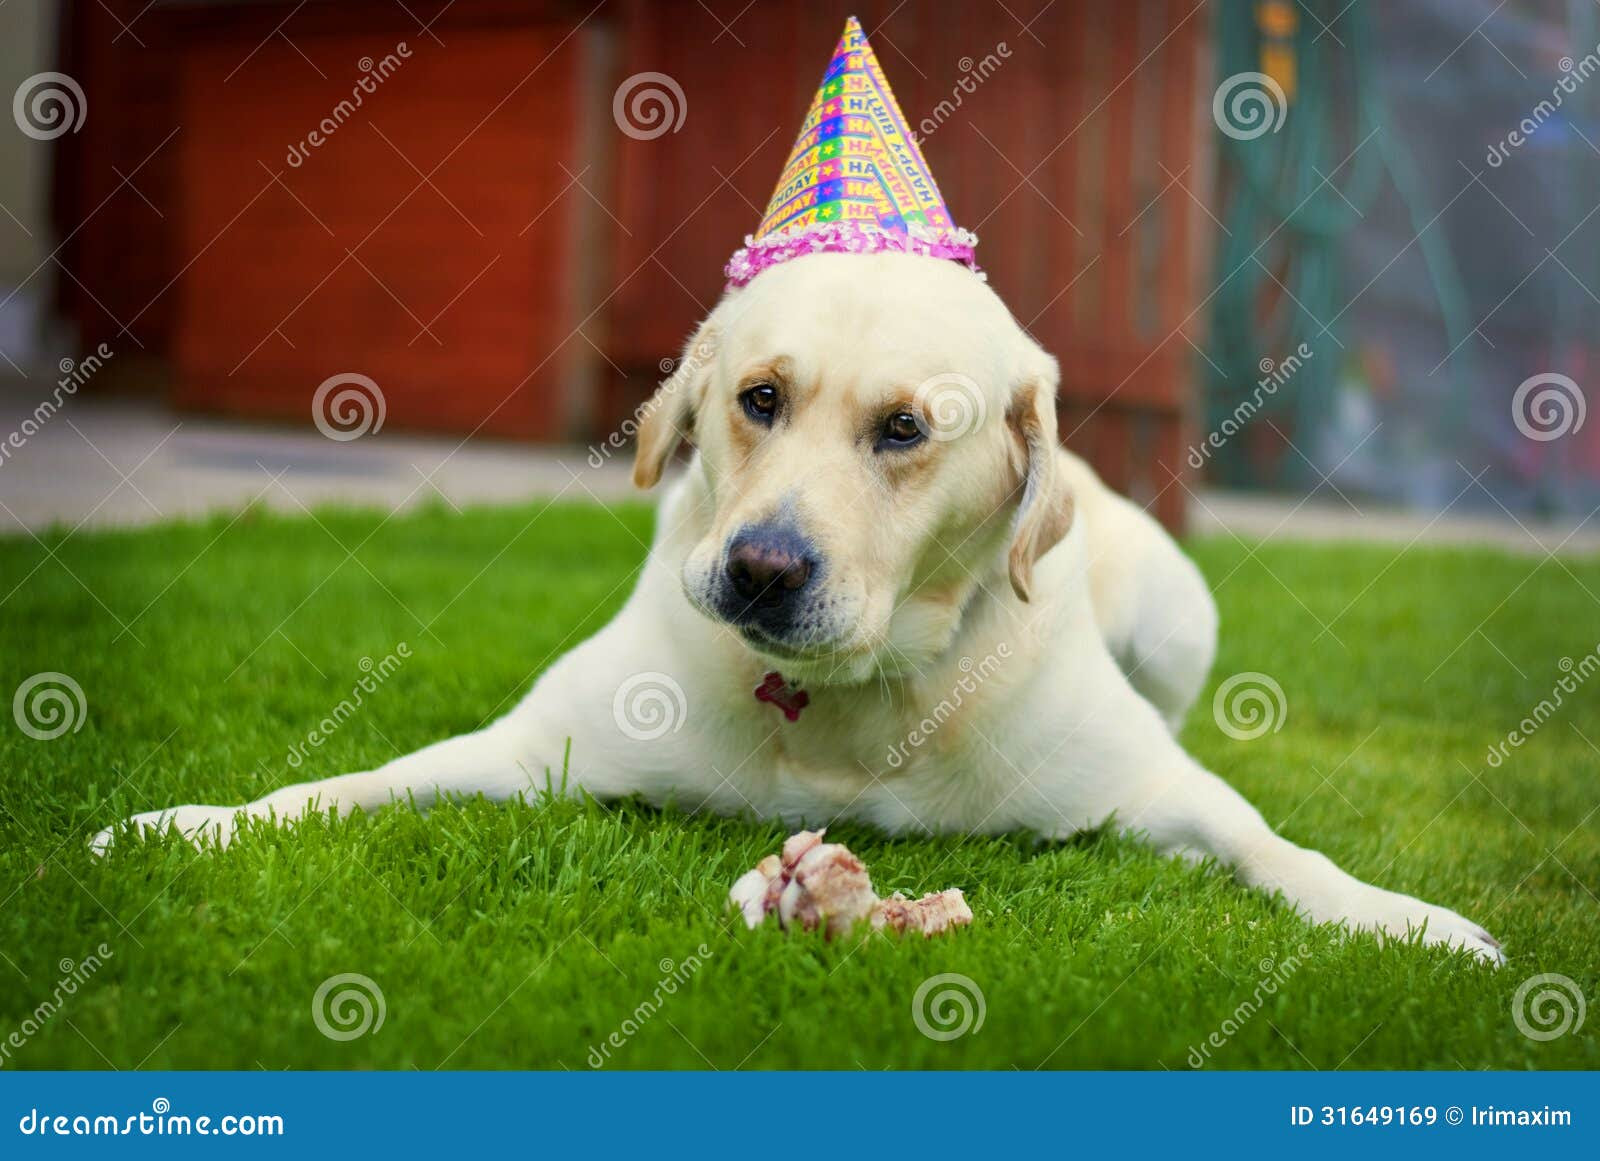 Zum Geburtstag Hund clacypiegloria blog